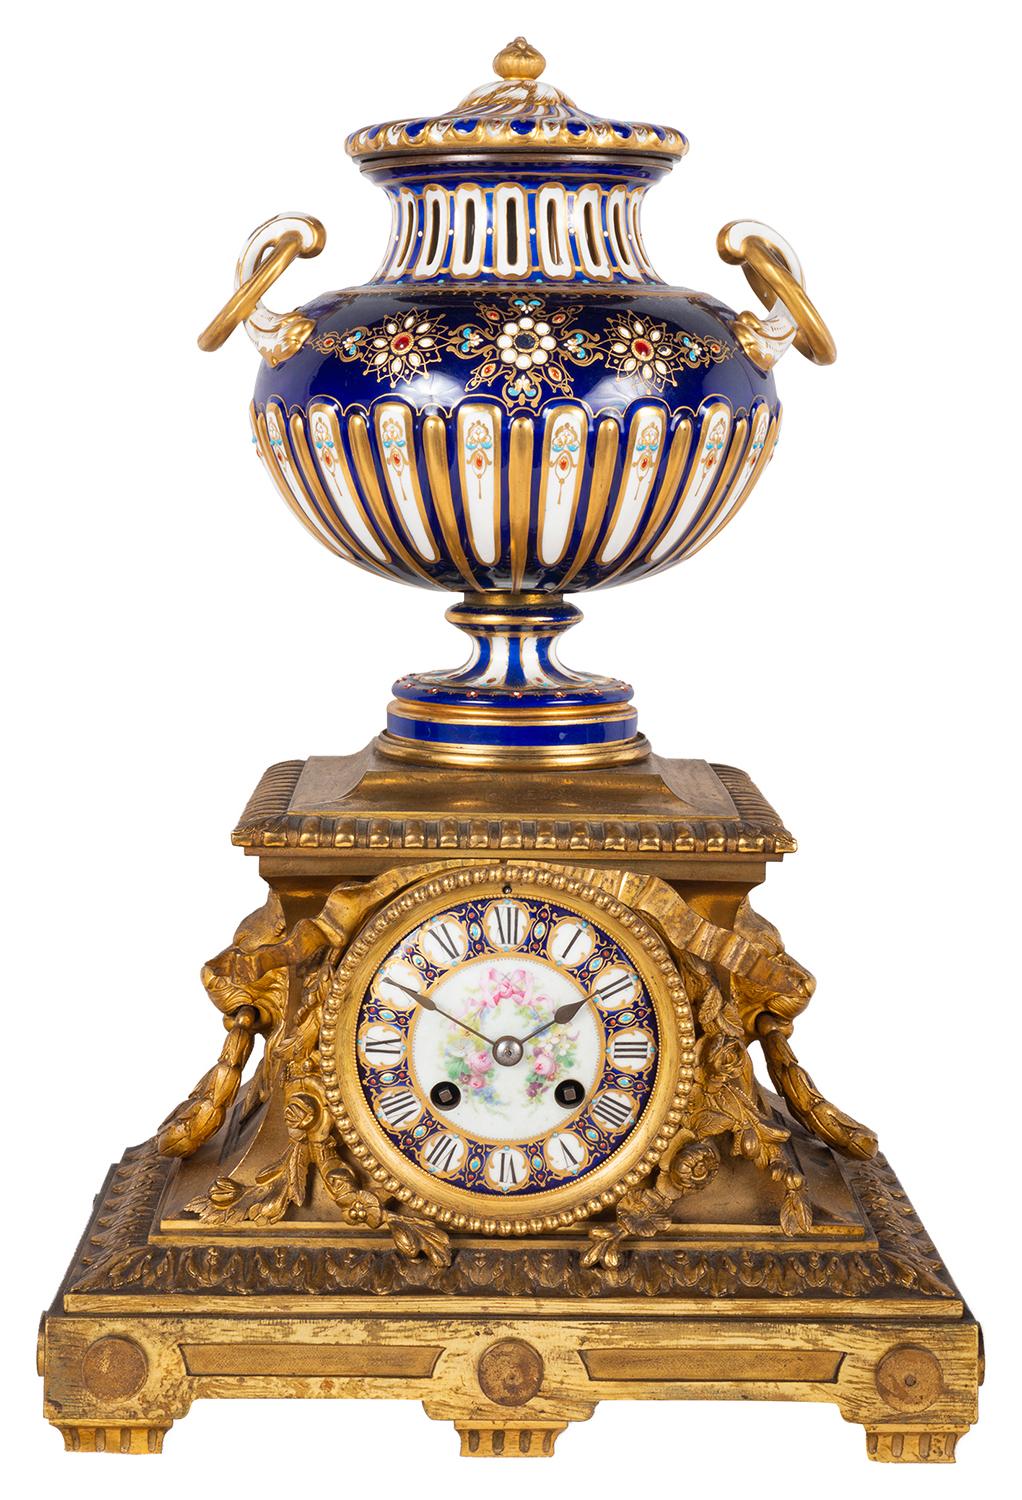 Eine sehr gute Qualität des späten 19. Jahrhunderts Französisch vergoldet Ormolu und Sevres Stil Porzellan Uhr Garnitur.
Die Uhr mit dieser wundervollen kobaltblau geschliffenen, geriffelten Deckelvase mit ringförmigen Henkeln und klassischem